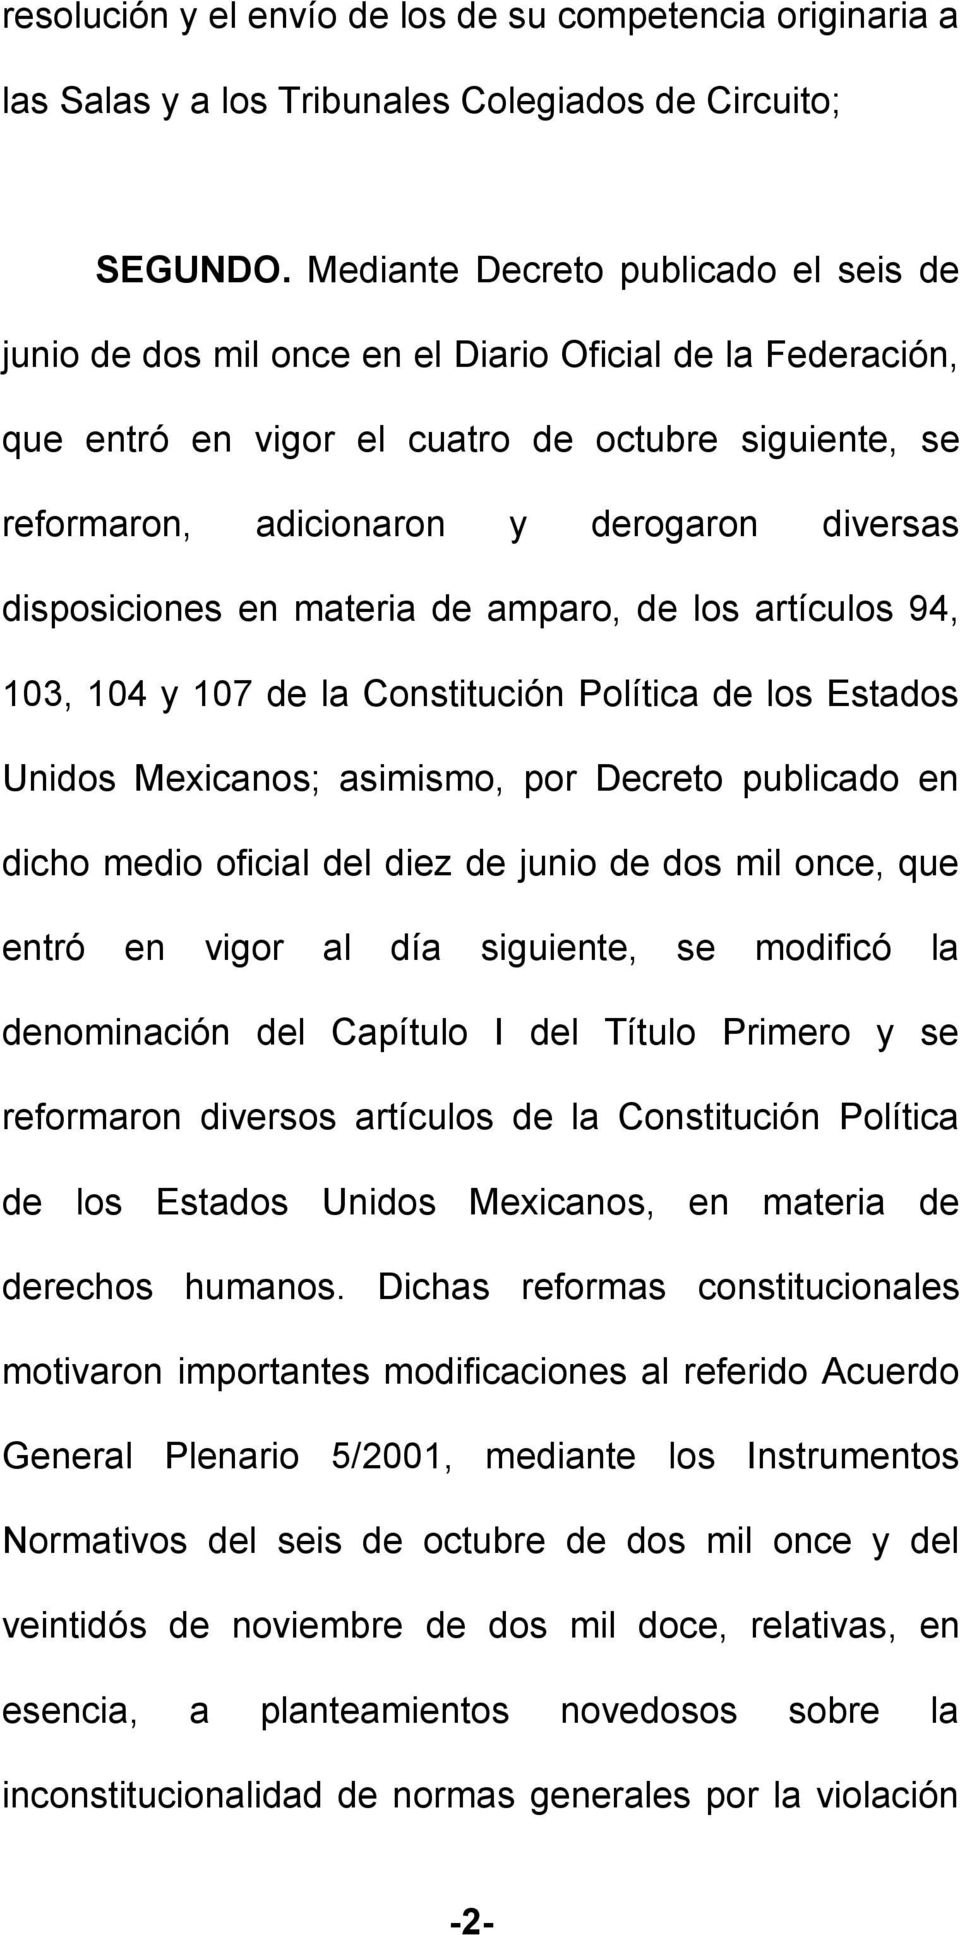 disposiciones en materia de amparo, de los artículos 94, 103, 104 y 107 de la Constitución Política de los Estados Unidos Mexicanos; asimismo, por Decreto publicado en dicho medio oficial del diez de